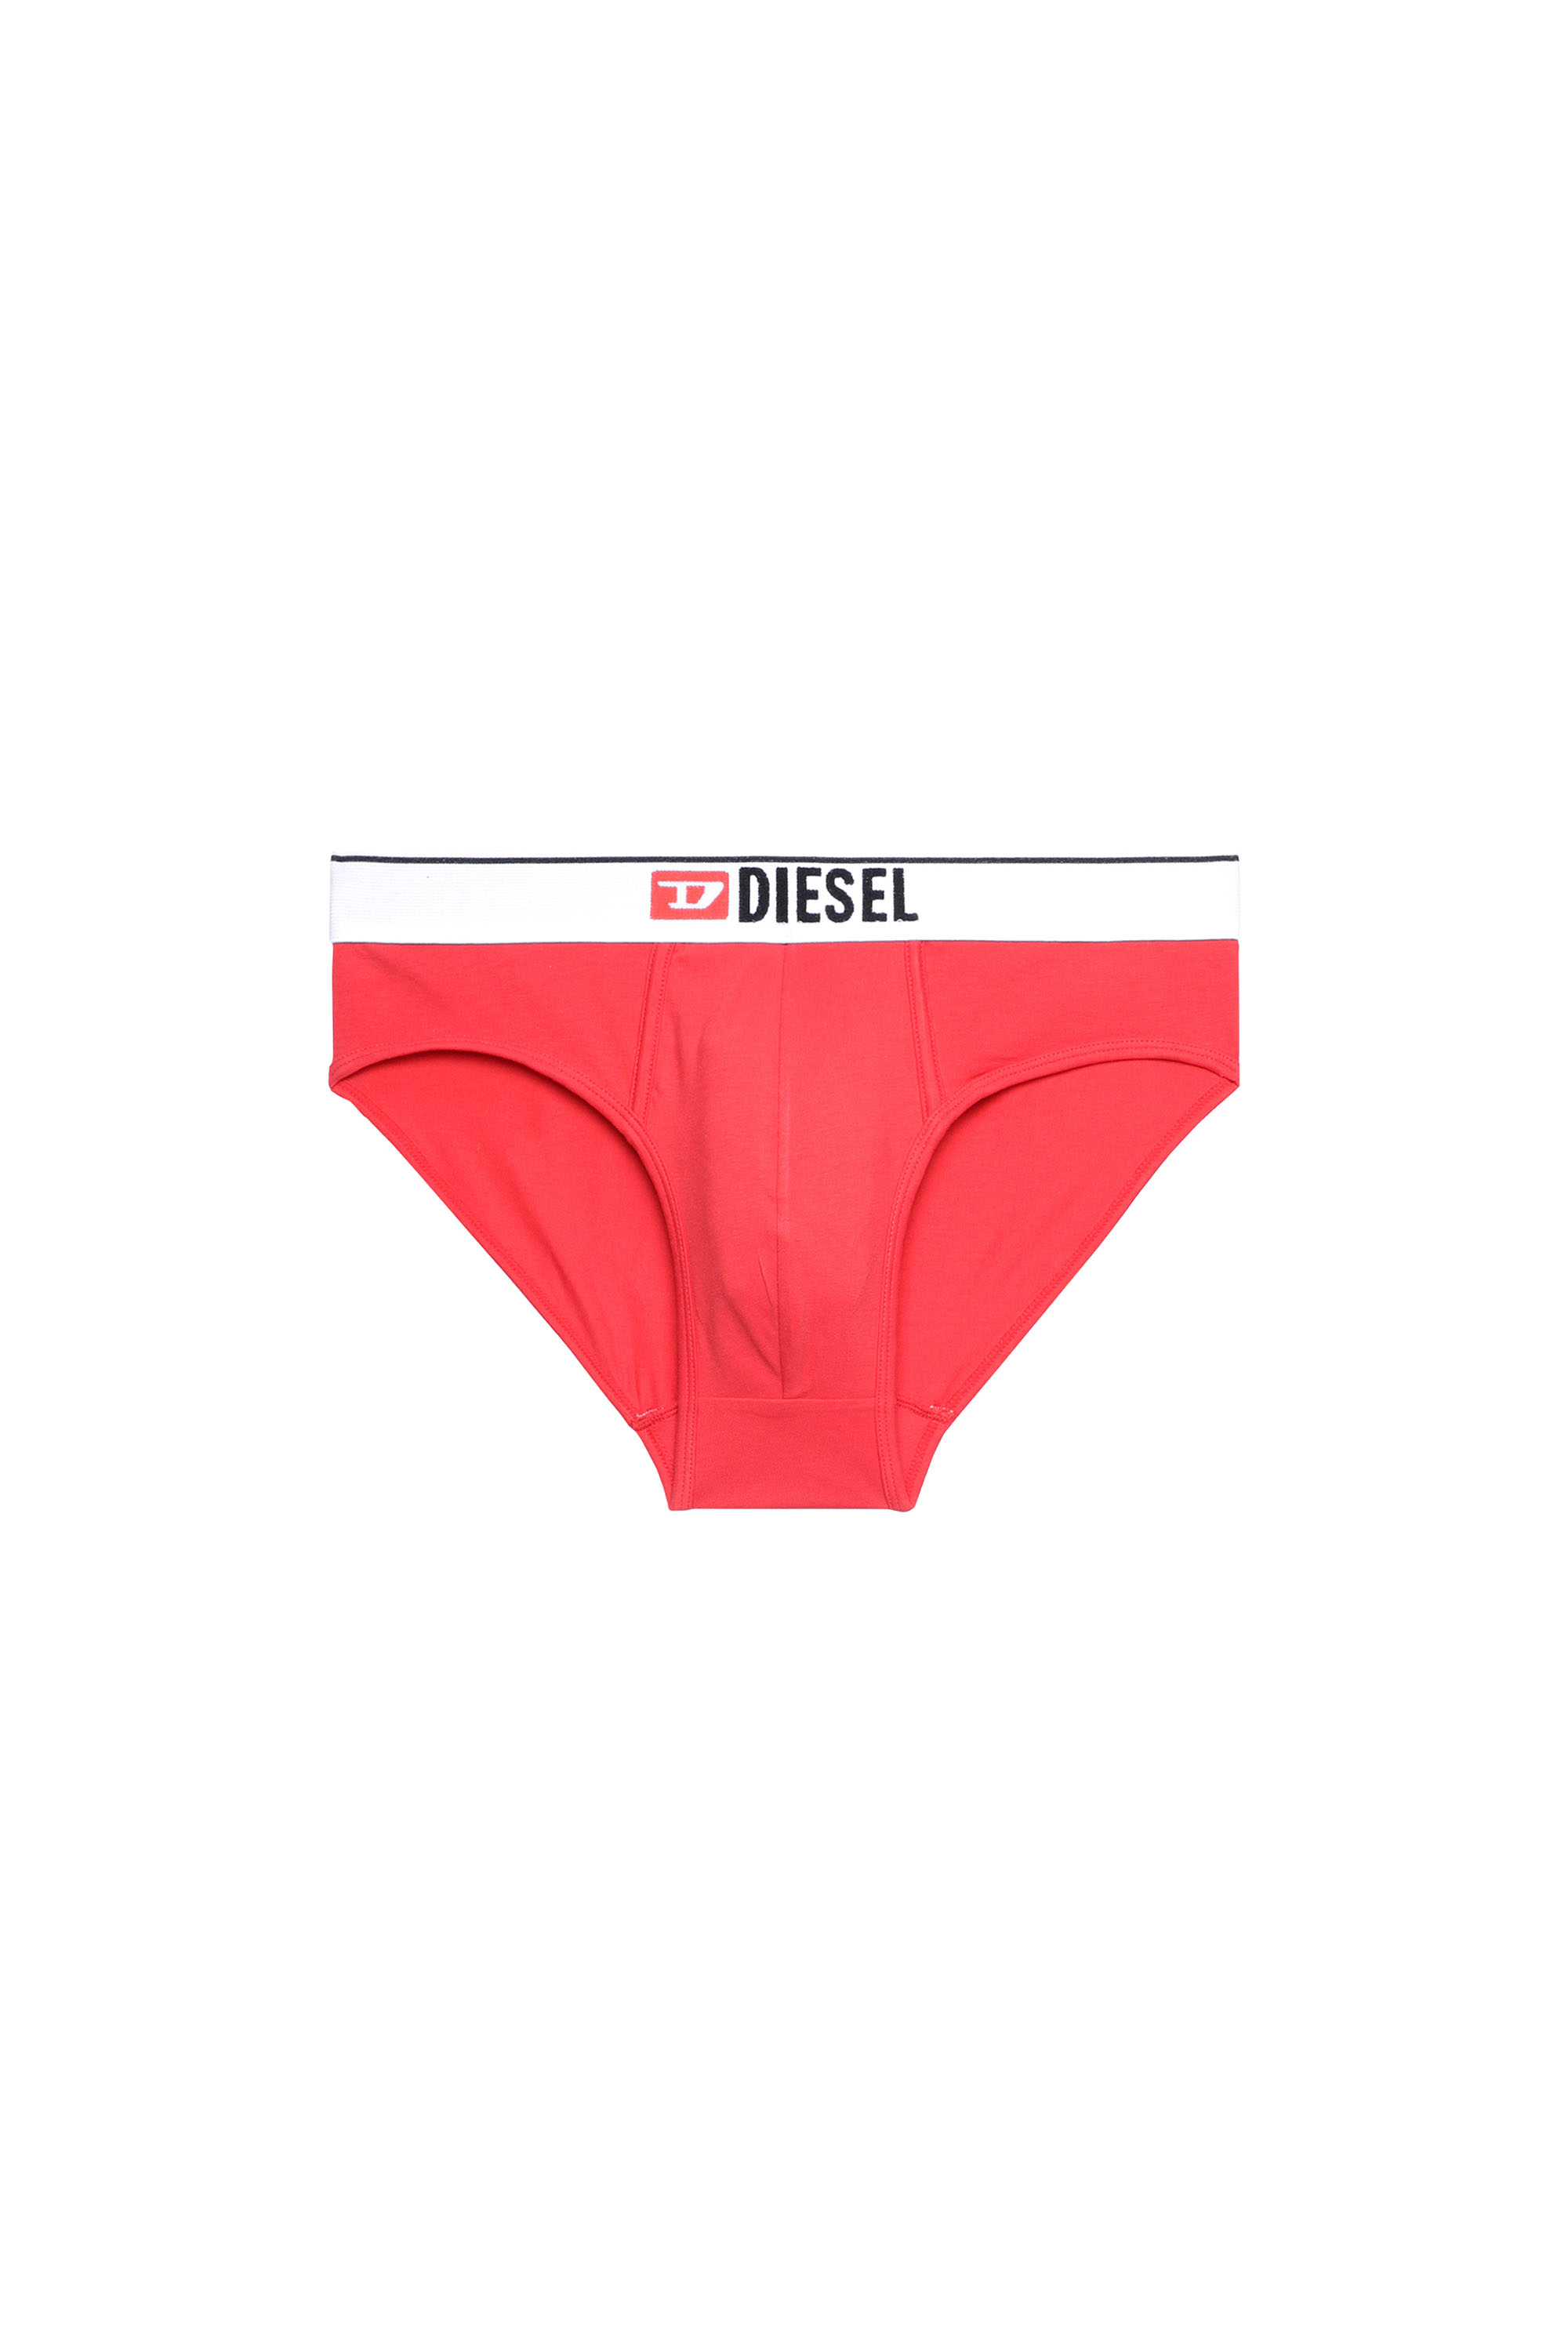 Diesel - UMBR-ANDRE, Red - Image 3